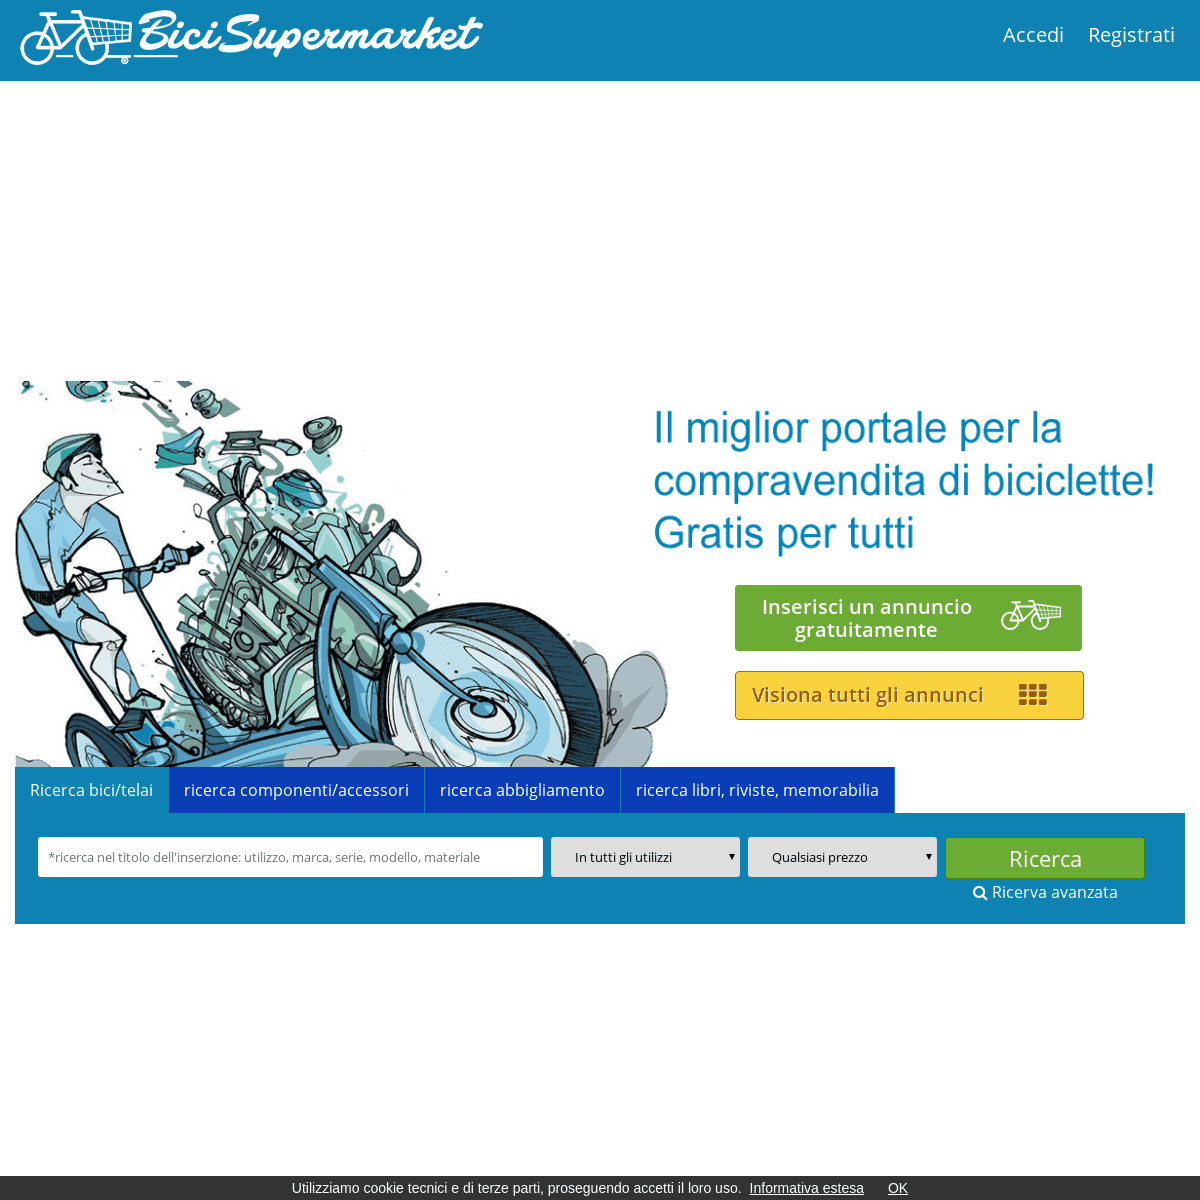 BiciSupermarket.it - Annunci Biciclette, Compro, Vendo Bici Usate e Nuove